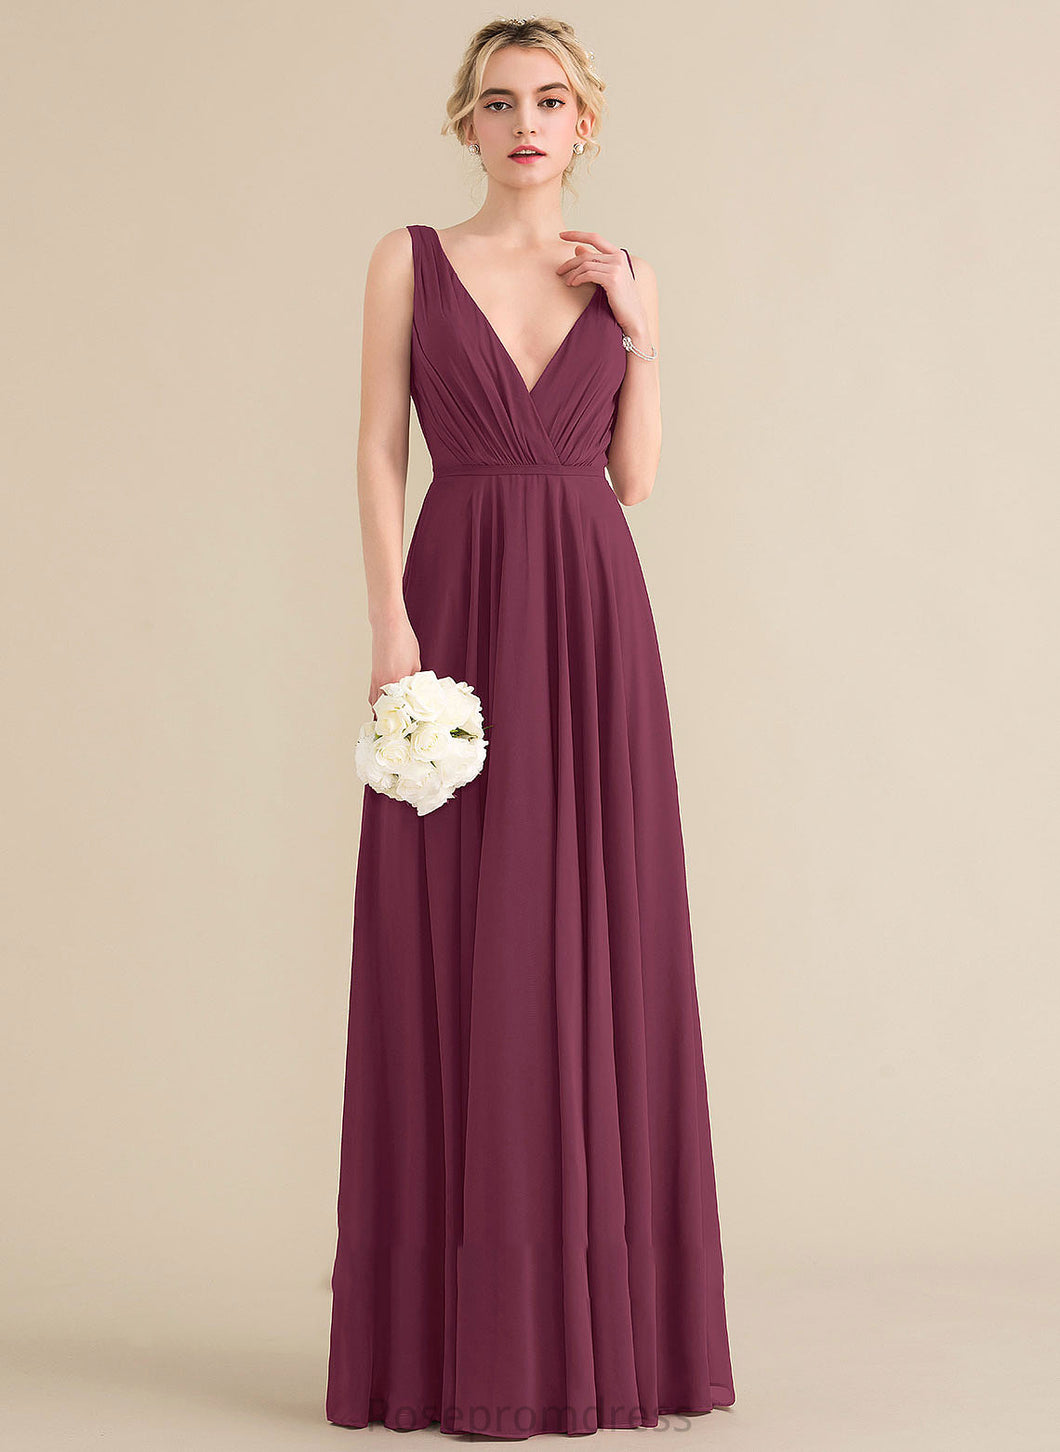 Length Embellishment Fabric Silhouette Neckline Ruffle V-neck Floor-Length A-Line Tania Bridesmaid Dresses